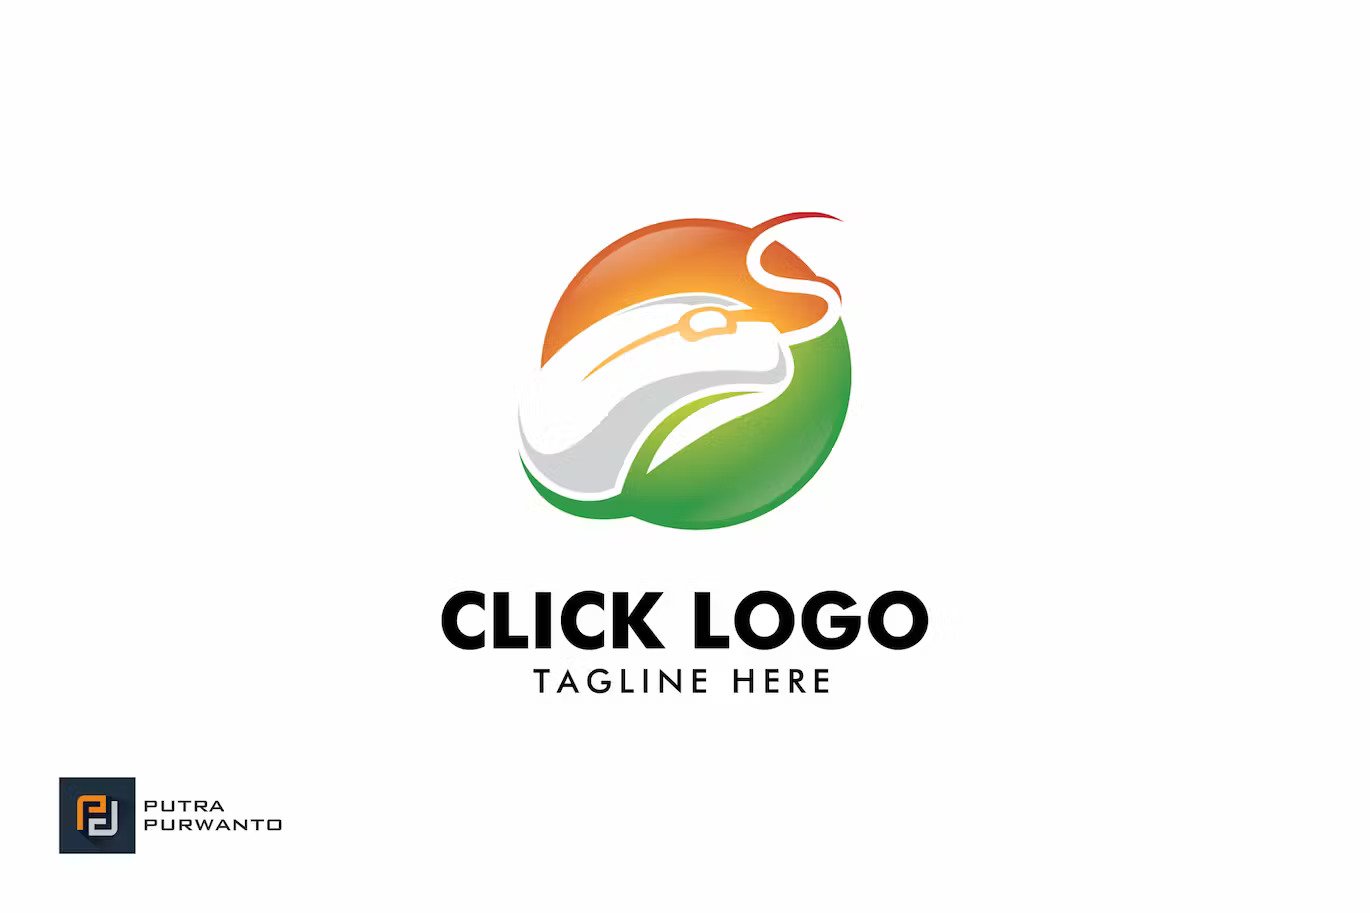 A click logo template